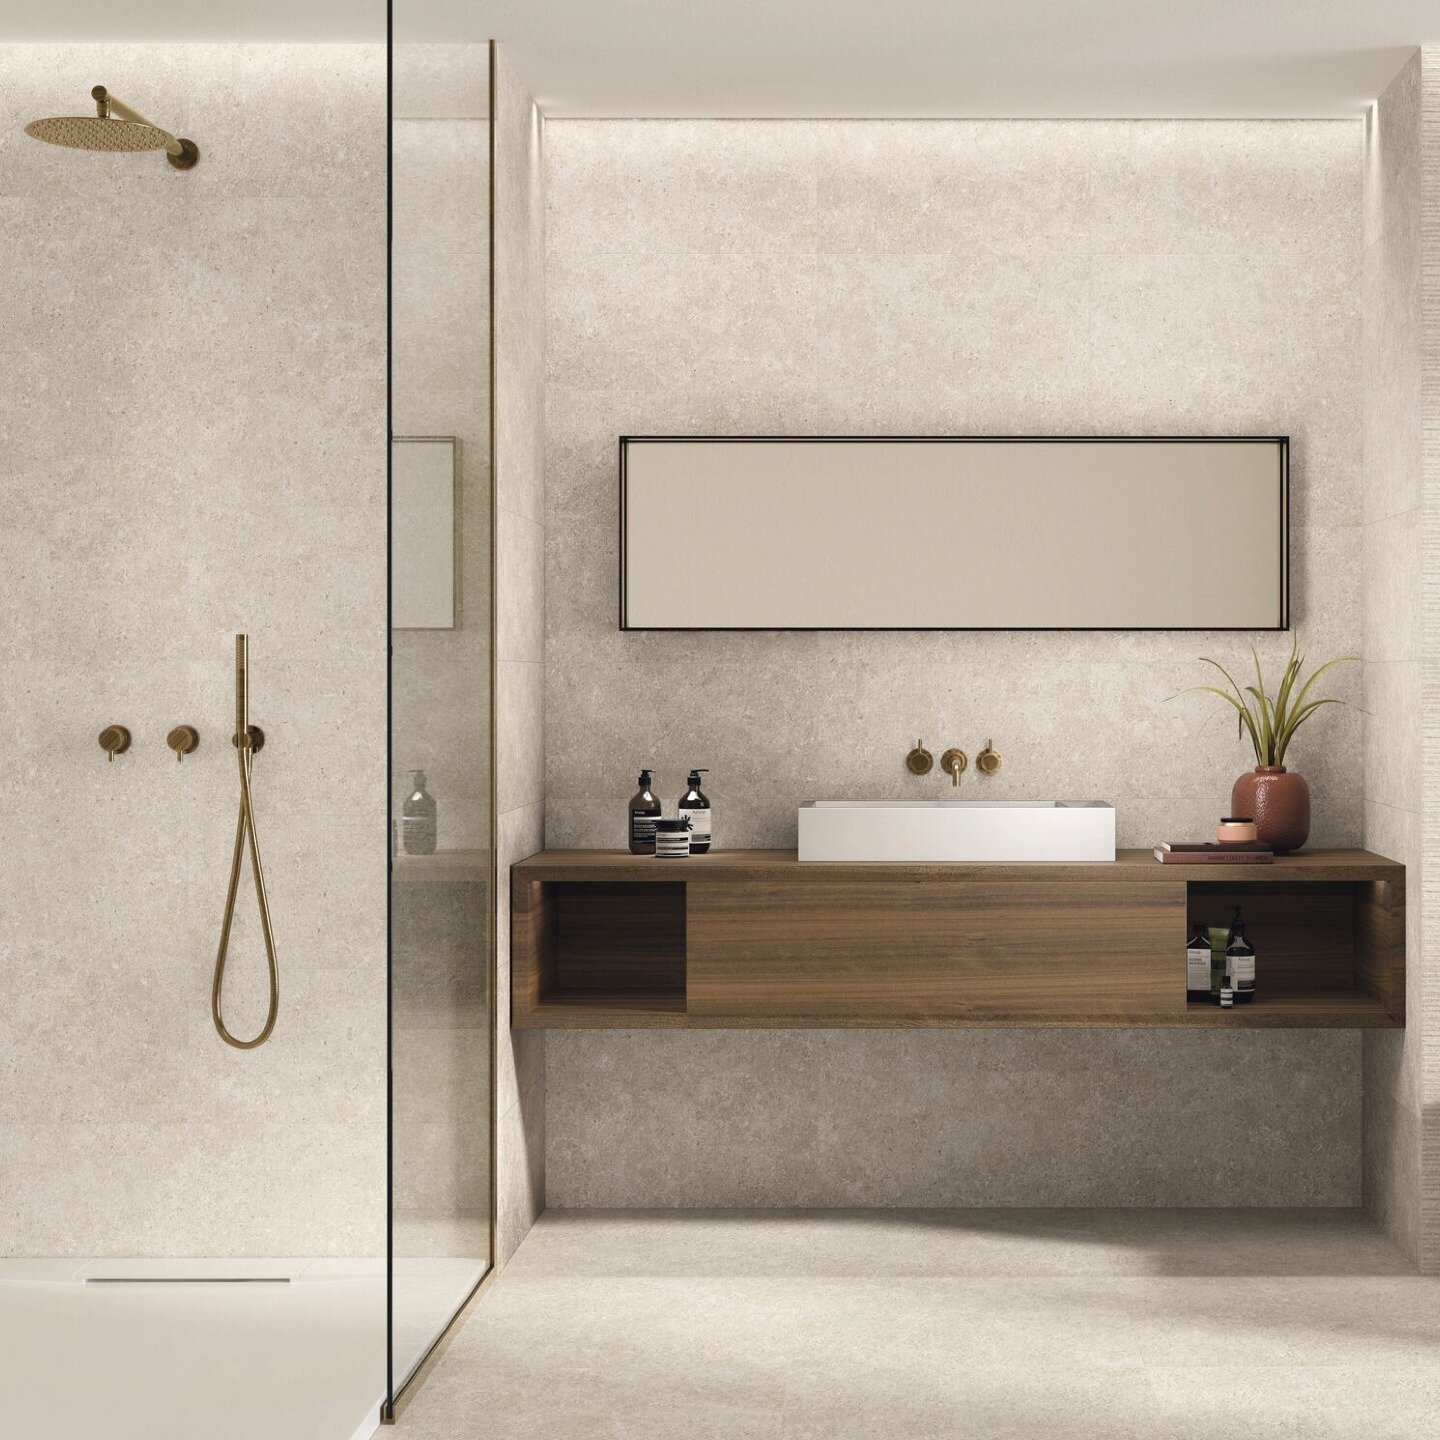 Os pavimentos s&atilde;o um elemento crucial no design de interiores de uma casa de banho elegante e moderna. Optar por um pavimento minimalista e s&oacute;brio pode criar uma sensa&ccedil;&atilde;o de amplitude e luminosidade, ao mesmo tempo que acr